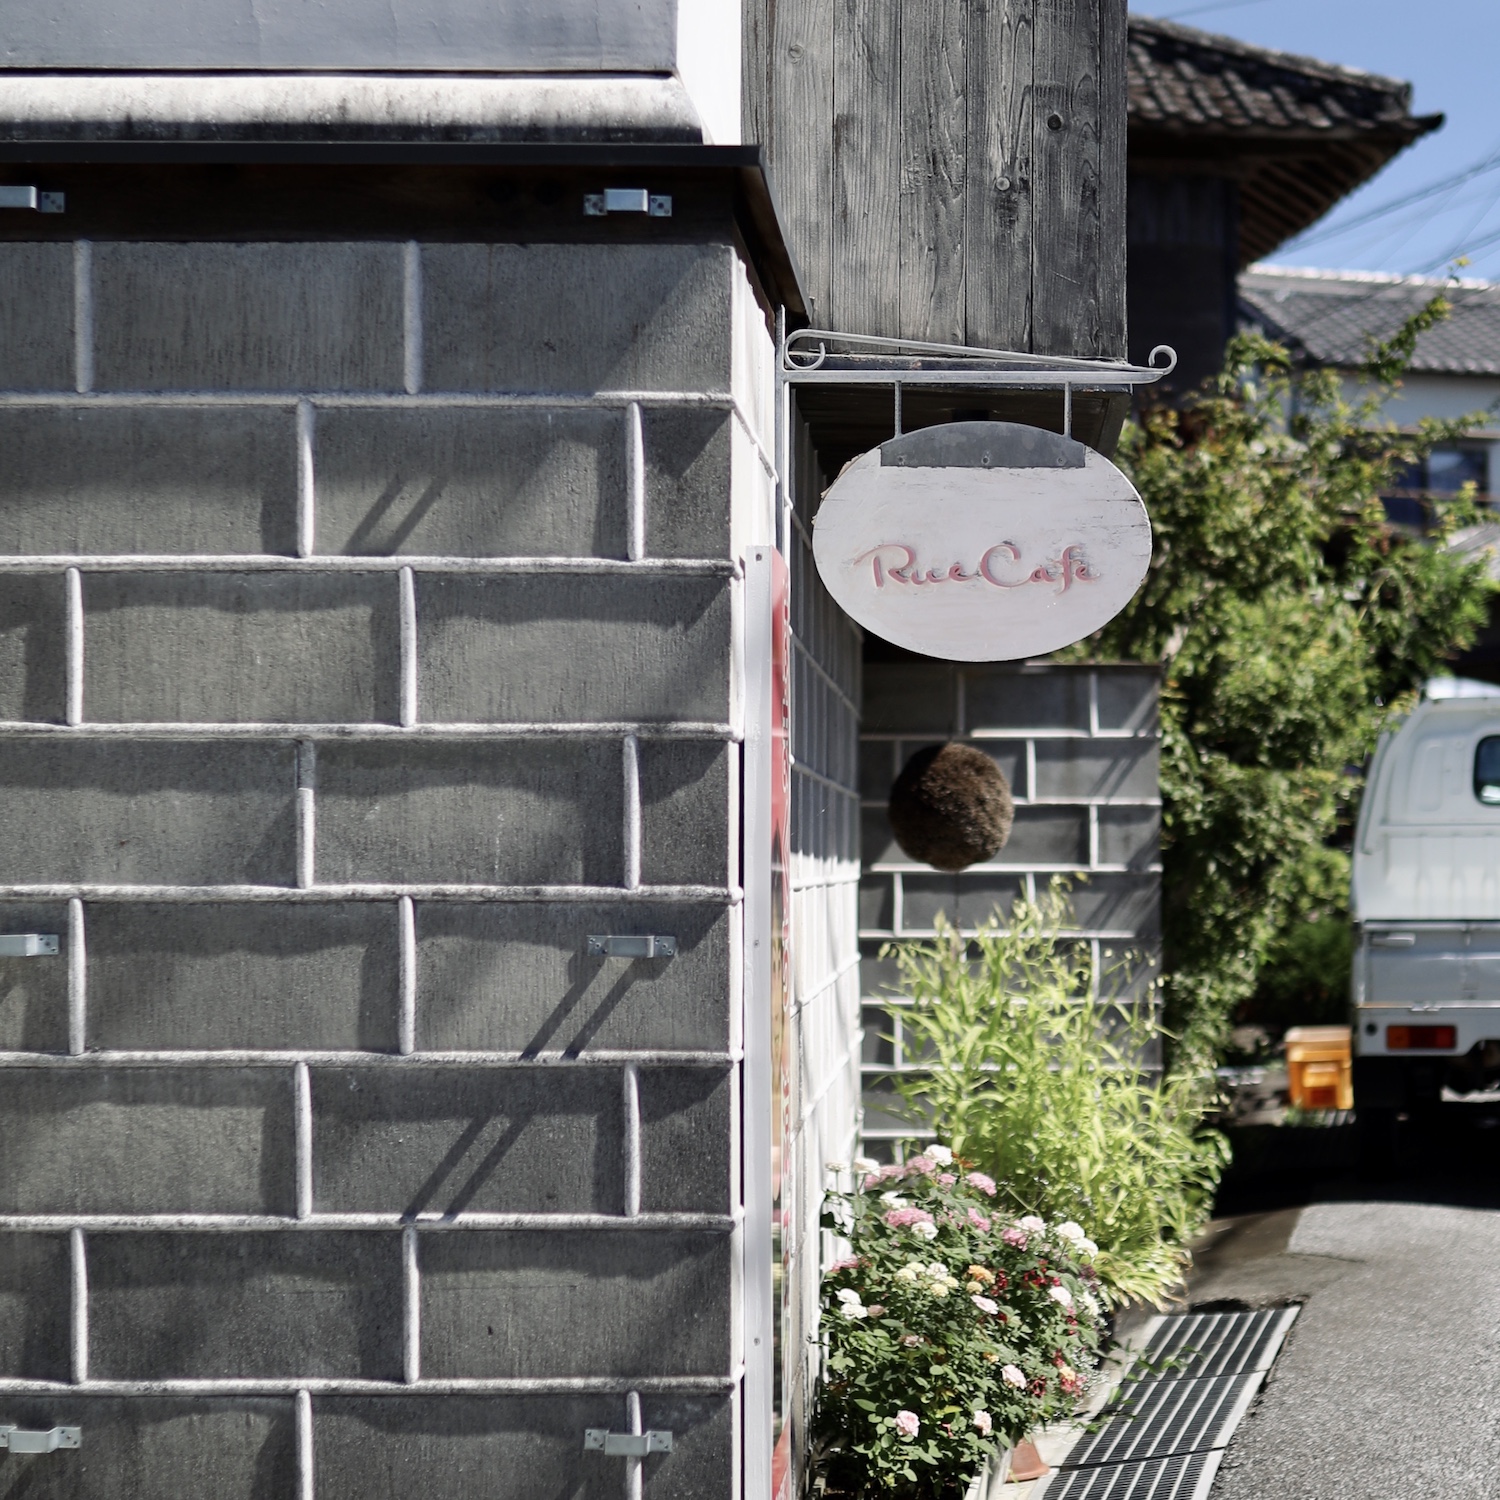 Rue Cafe（ルーカフェ）｜香南市夜須の港町にひっそりとたたずむ古民家カフェ。